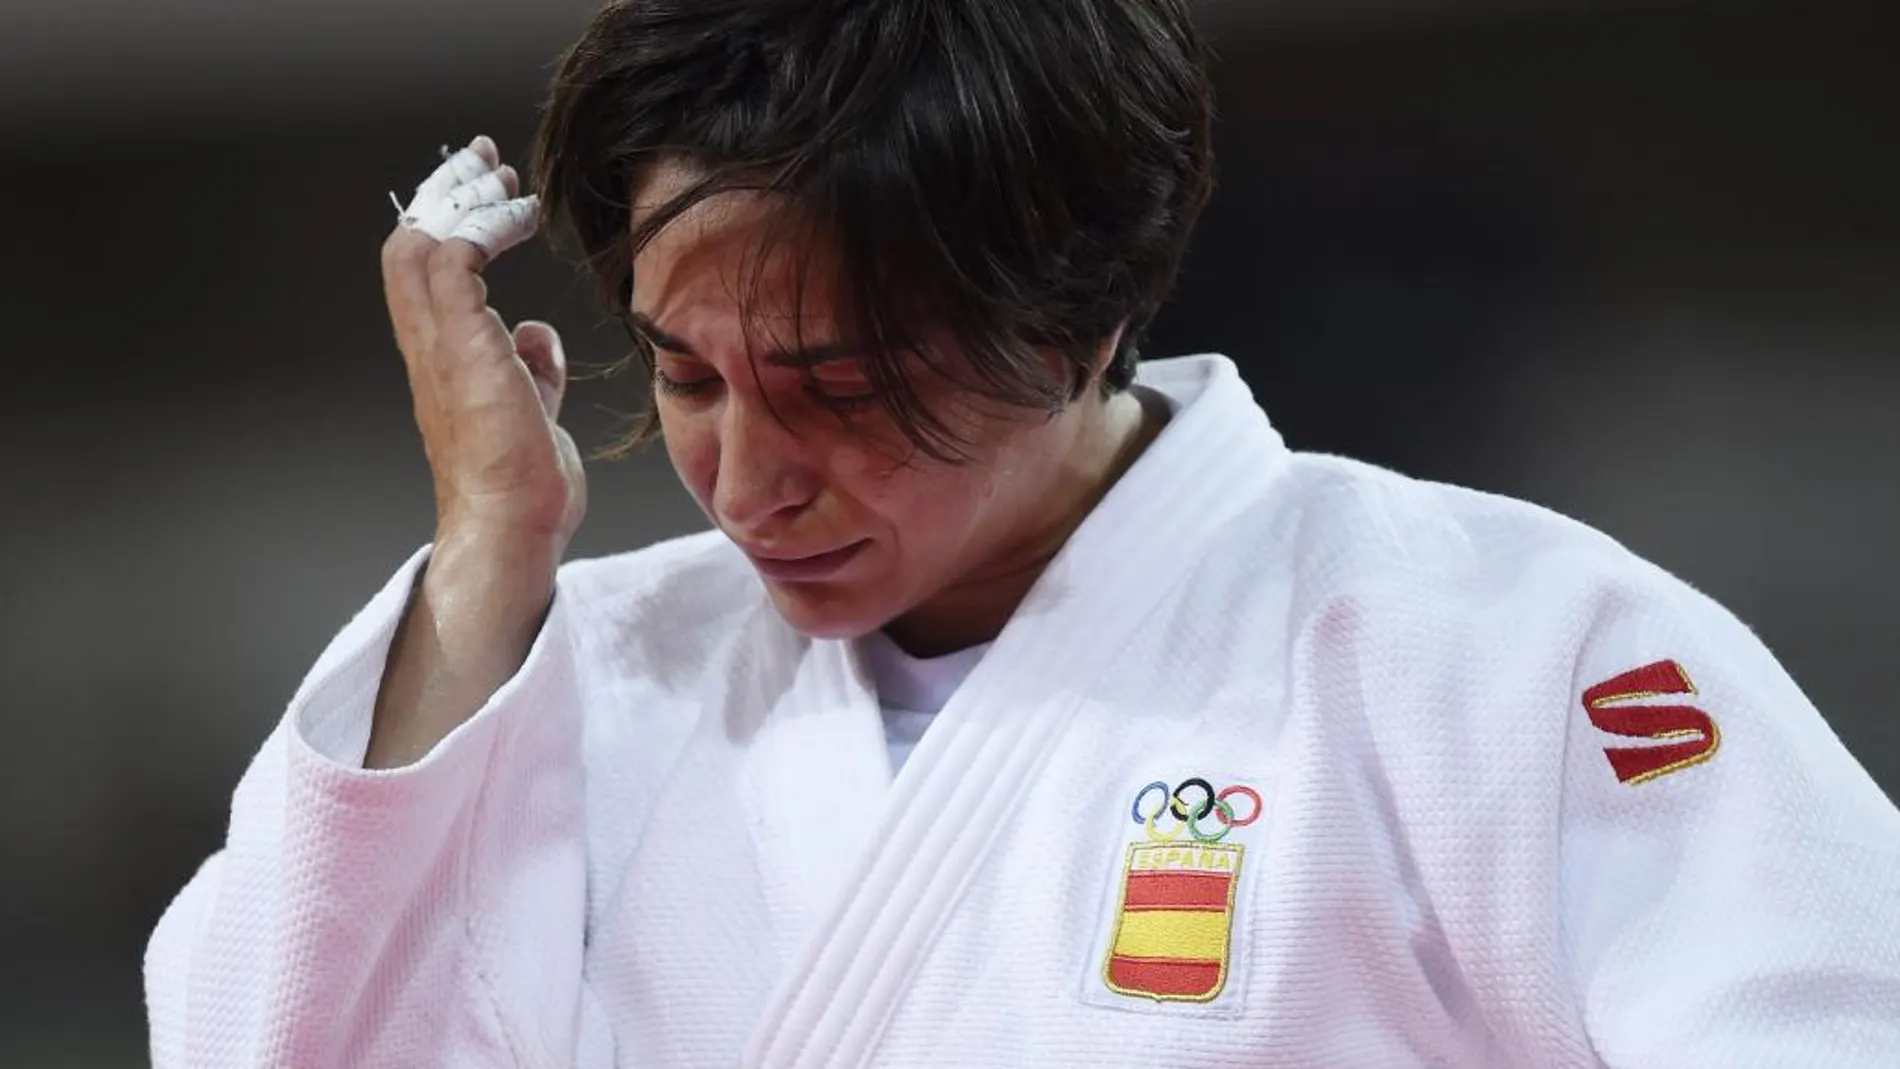 Julia Figueroa se despidió entre lágrimas de sus primeros Juegos Olímpicos